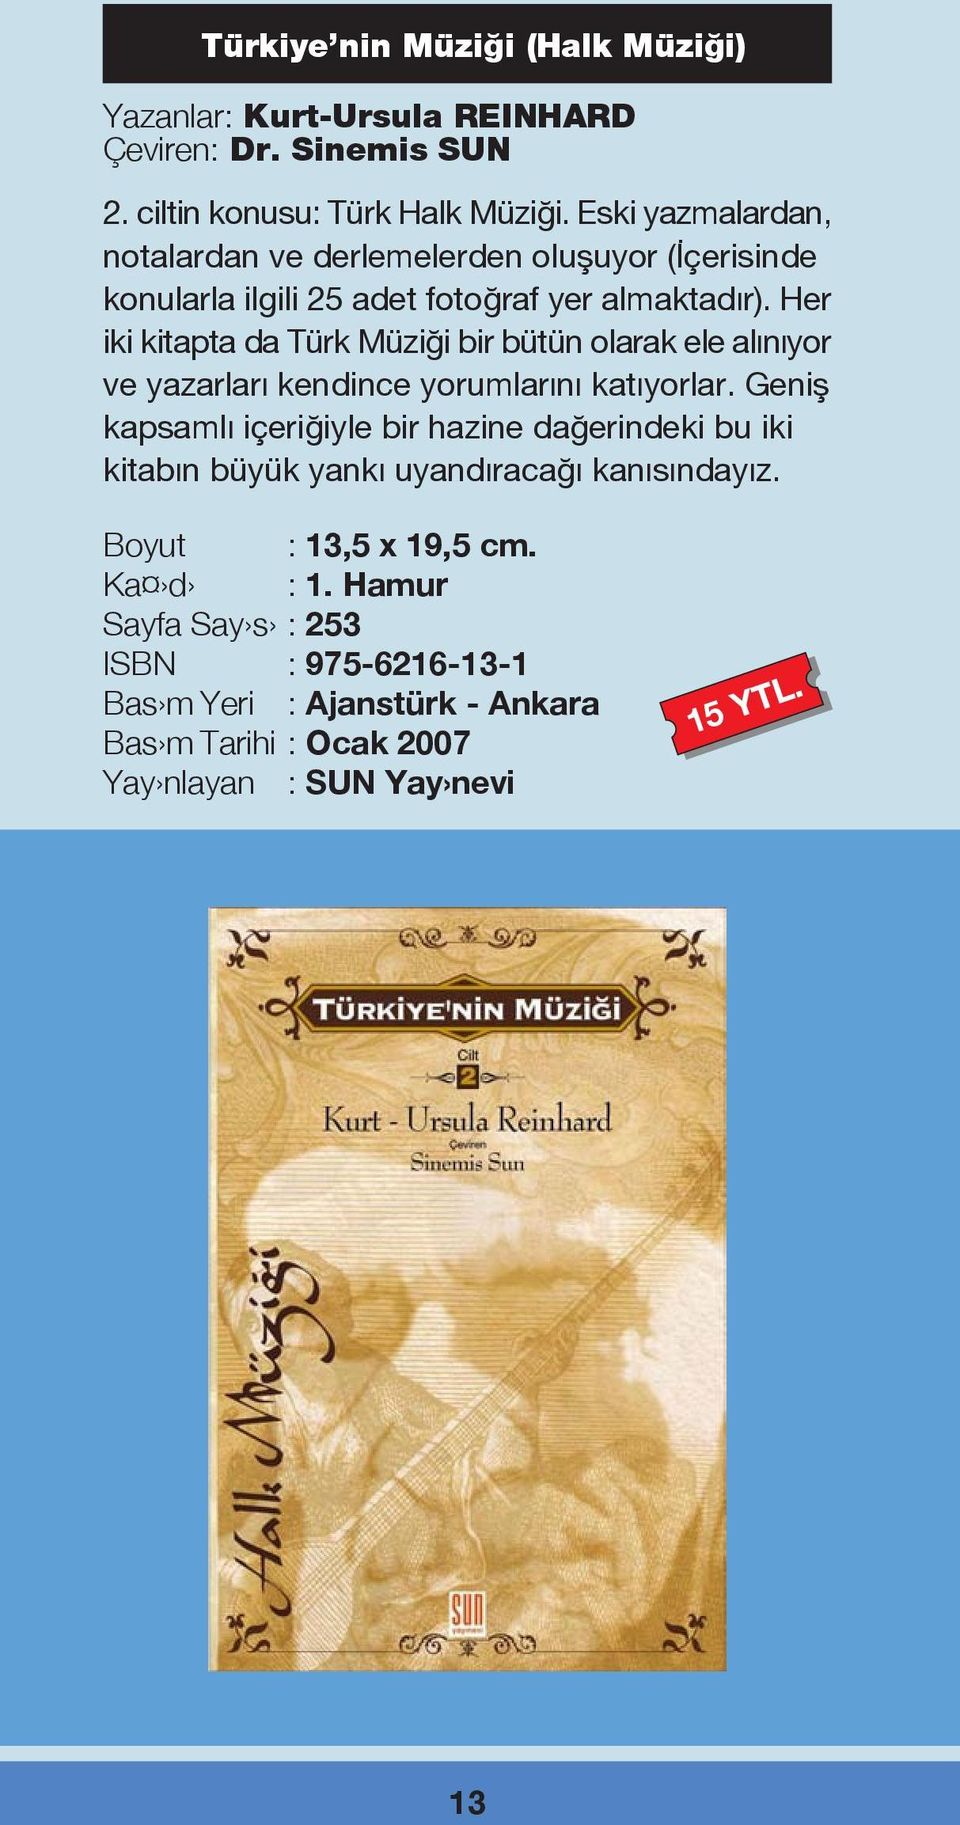 Her iki kitapta da Türk Müzi i bir bütün olarak ele al n yor ve yazarlar kendince yorumlar n kat yorlar.